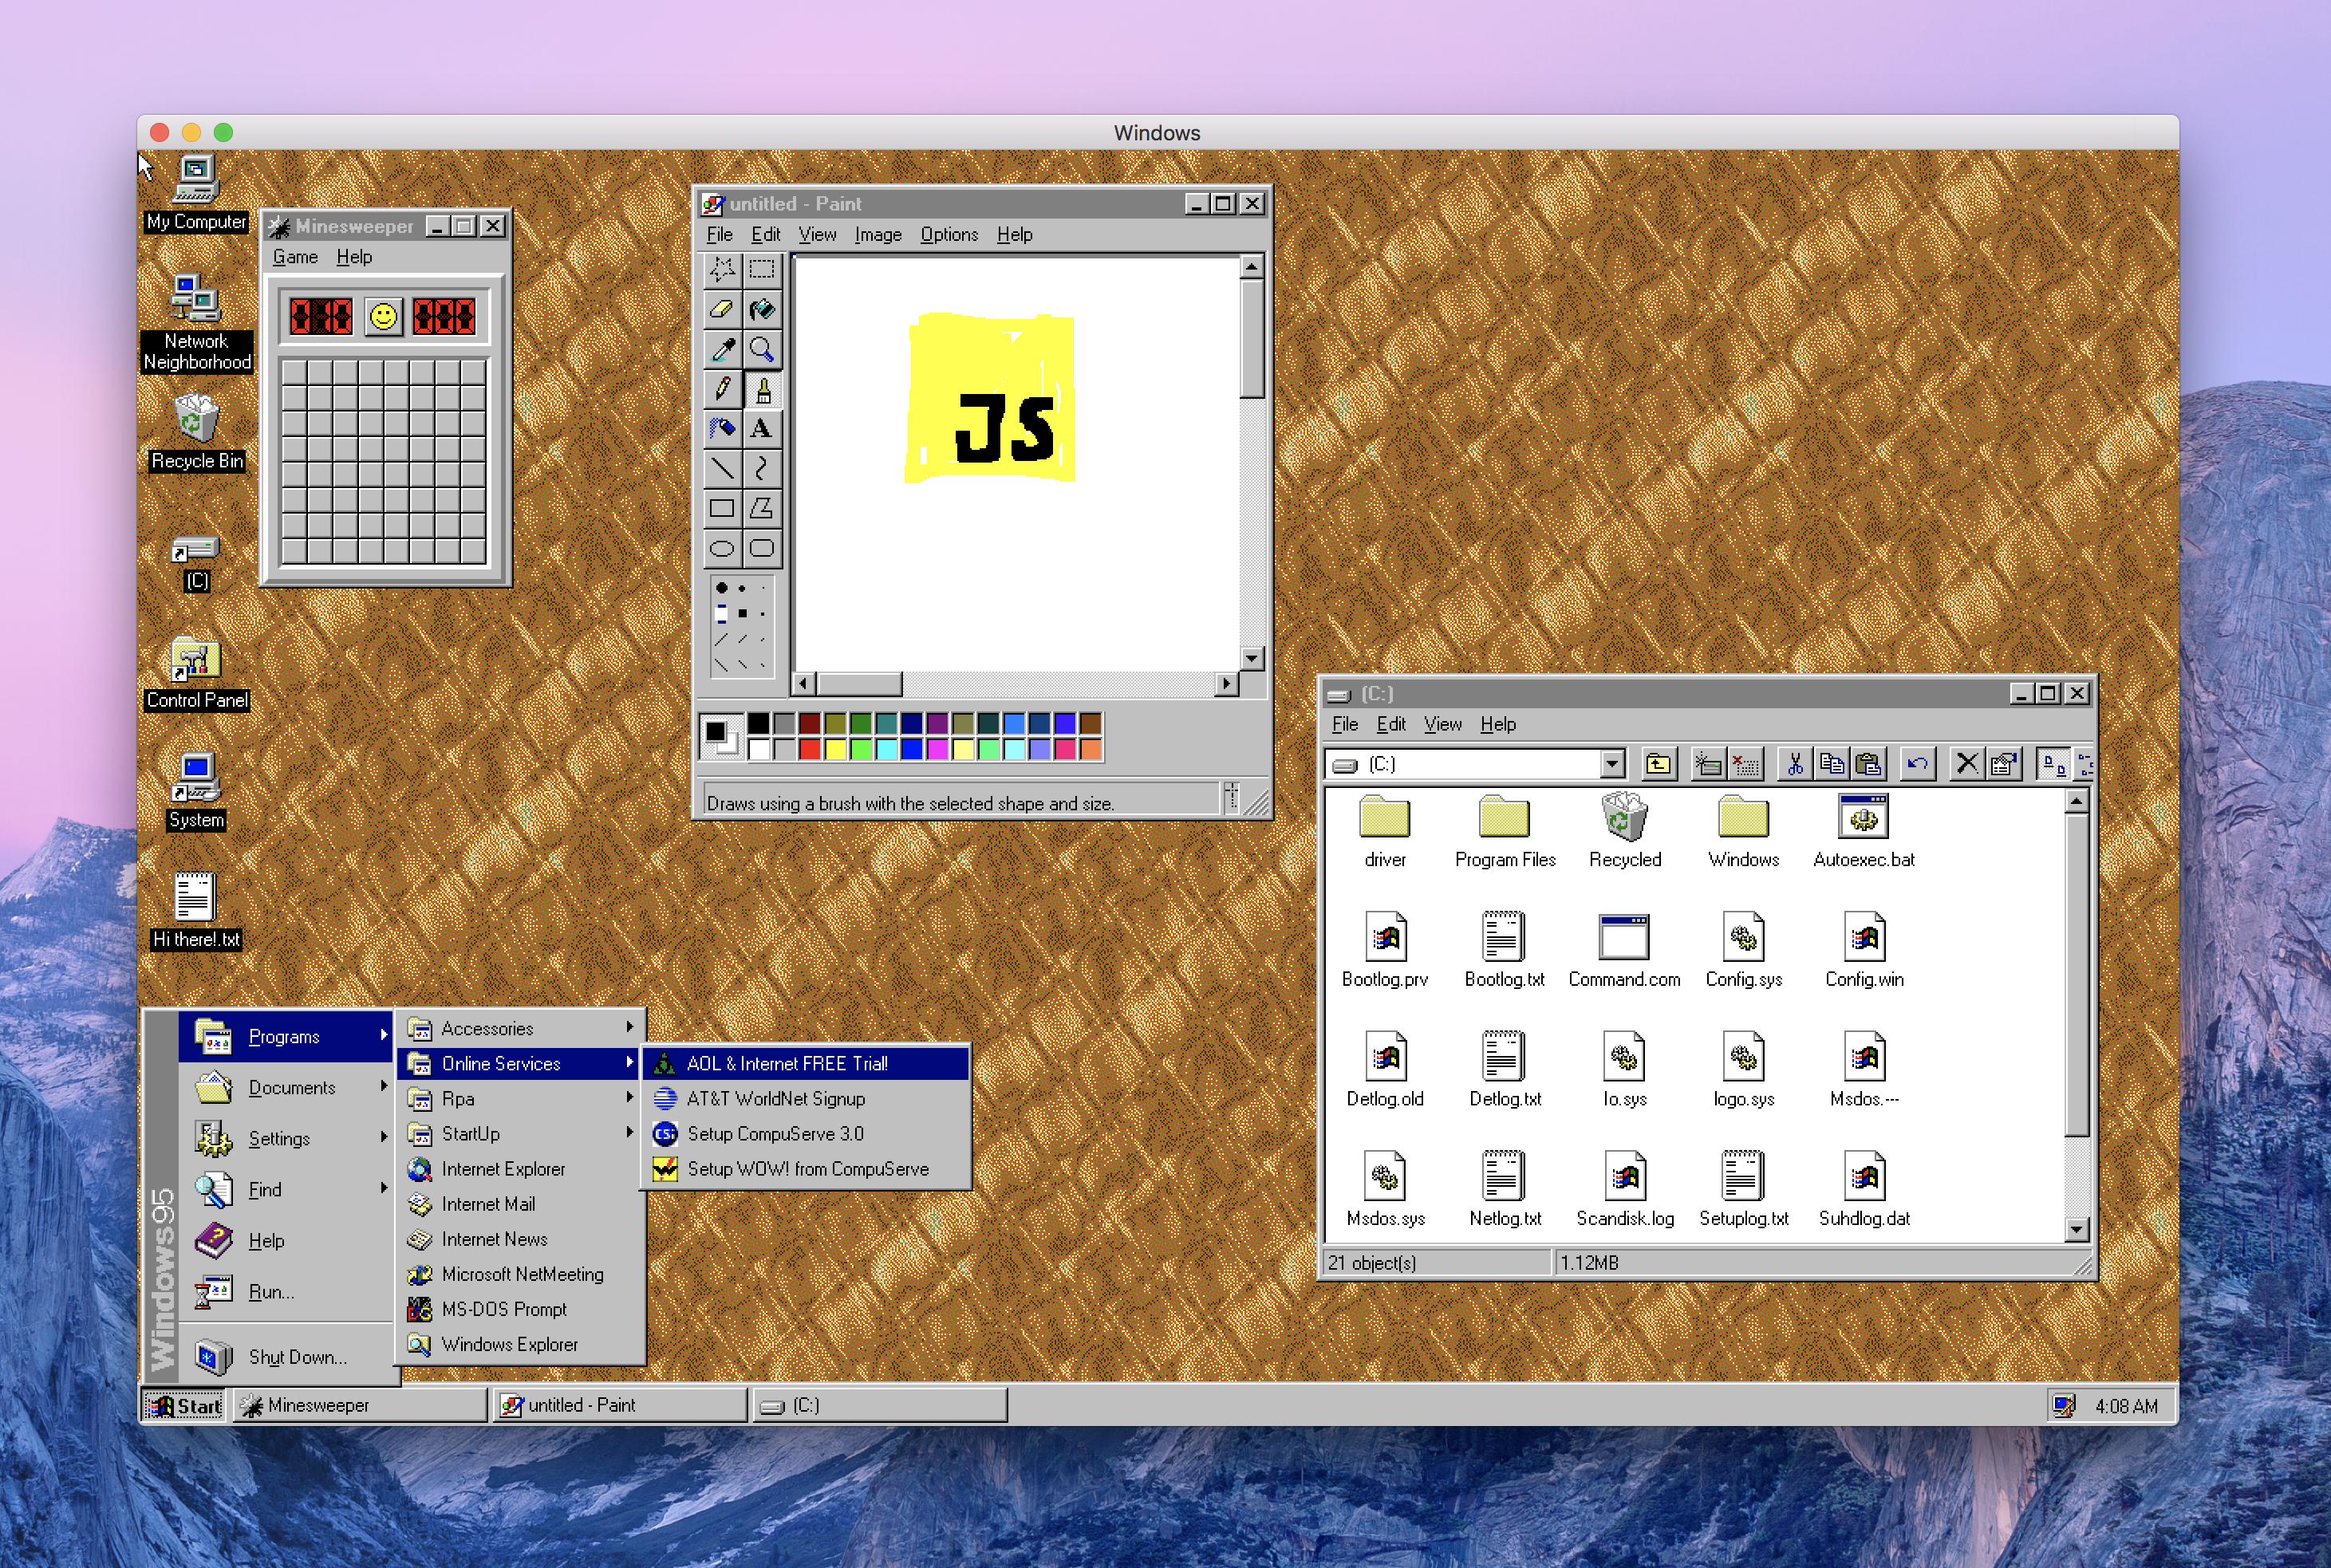 Immagine pubblicata in relazione al seguente contenuto: Windows 95 diviene portable ed eseguibile su Windows, Linux e macOS | Nome immagine: news28640_App-windows-95-Screenshot_1.png